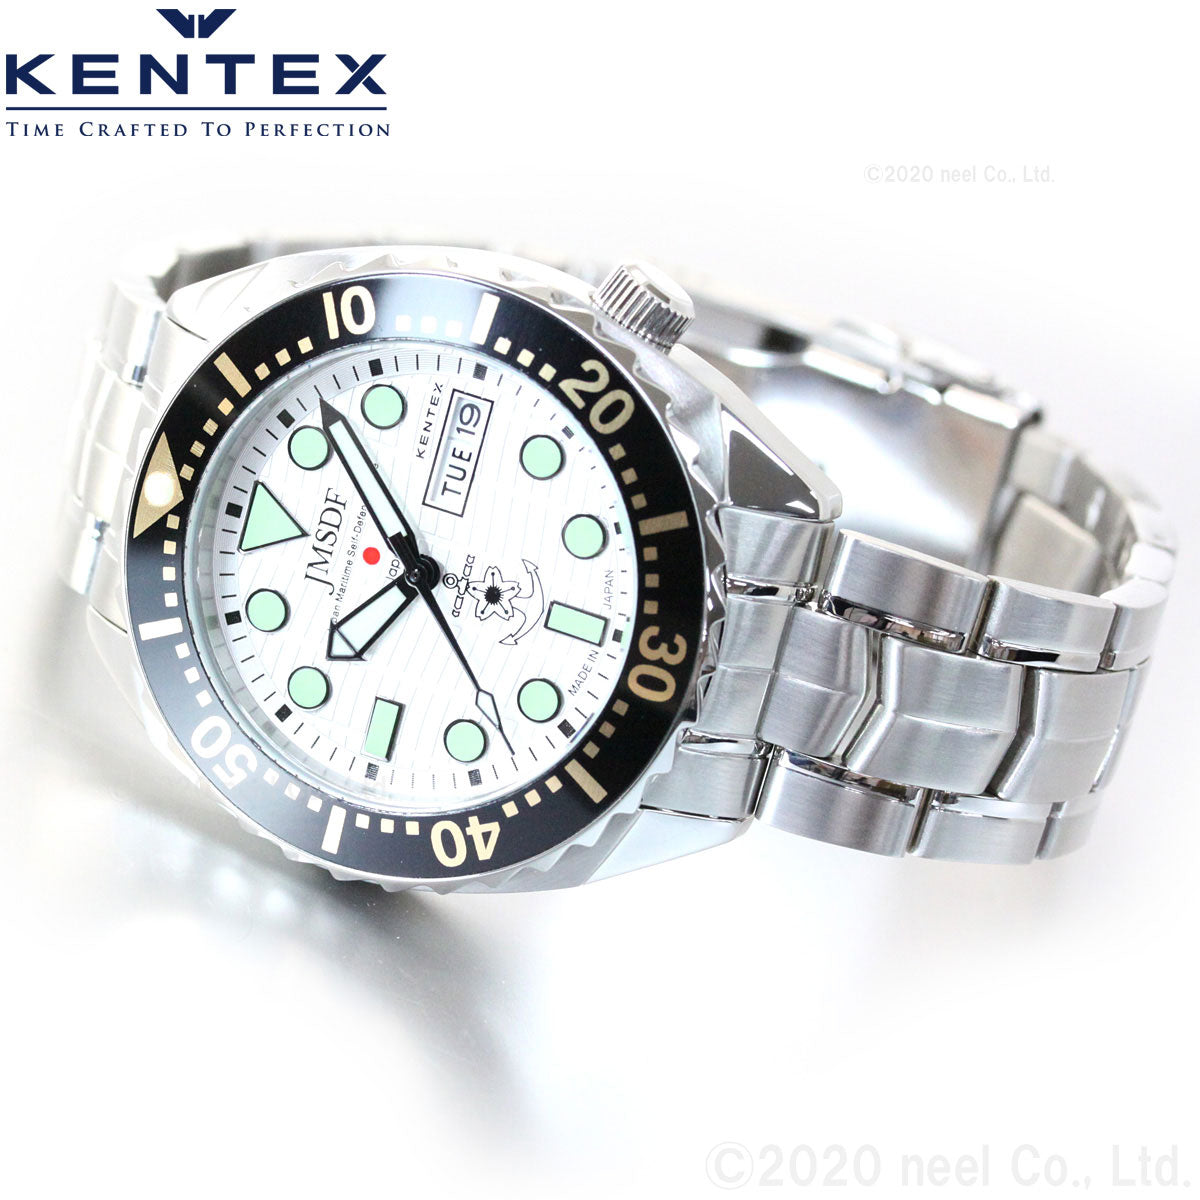 KENTEX ケンテックス 腕時計 メンズ JMSDF PRO 自衛隊モデル 海上